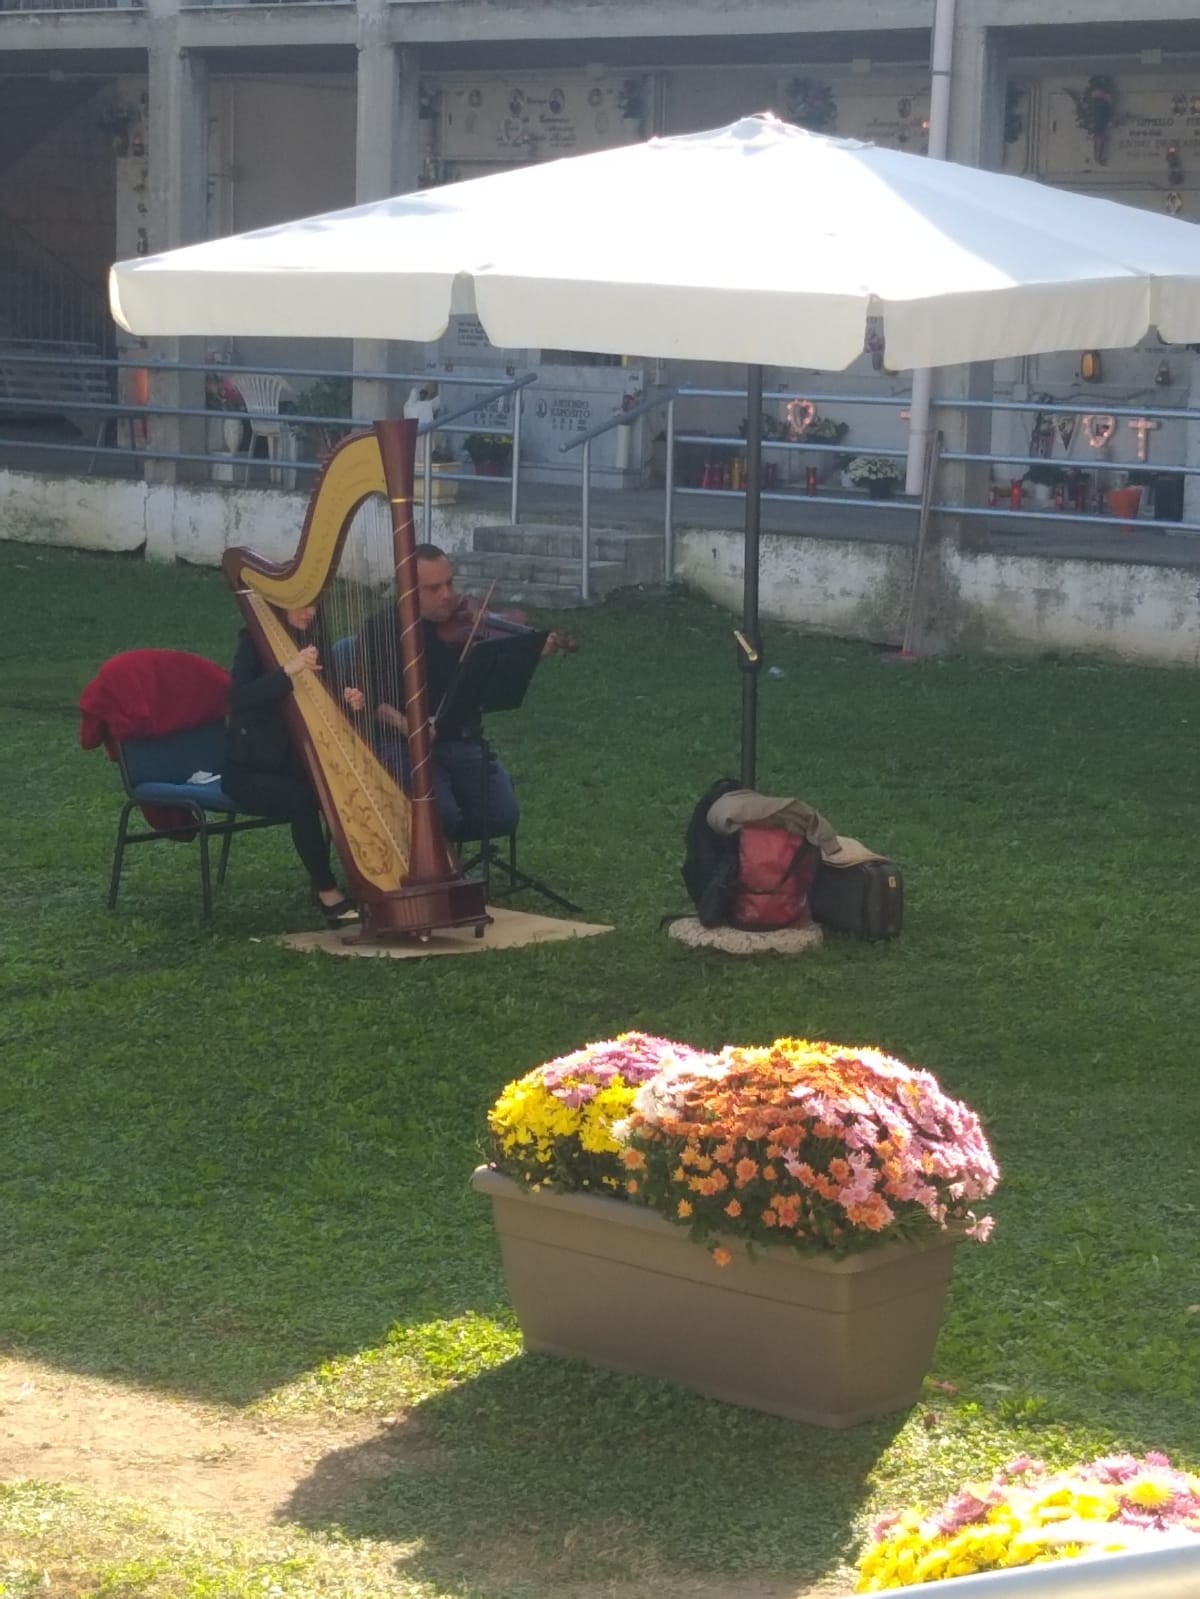 TUFINO. Accoglienza sbalorditiva al cimitero, un look esclusivo: fiori, tappeto blu e la musica di arpe e violini